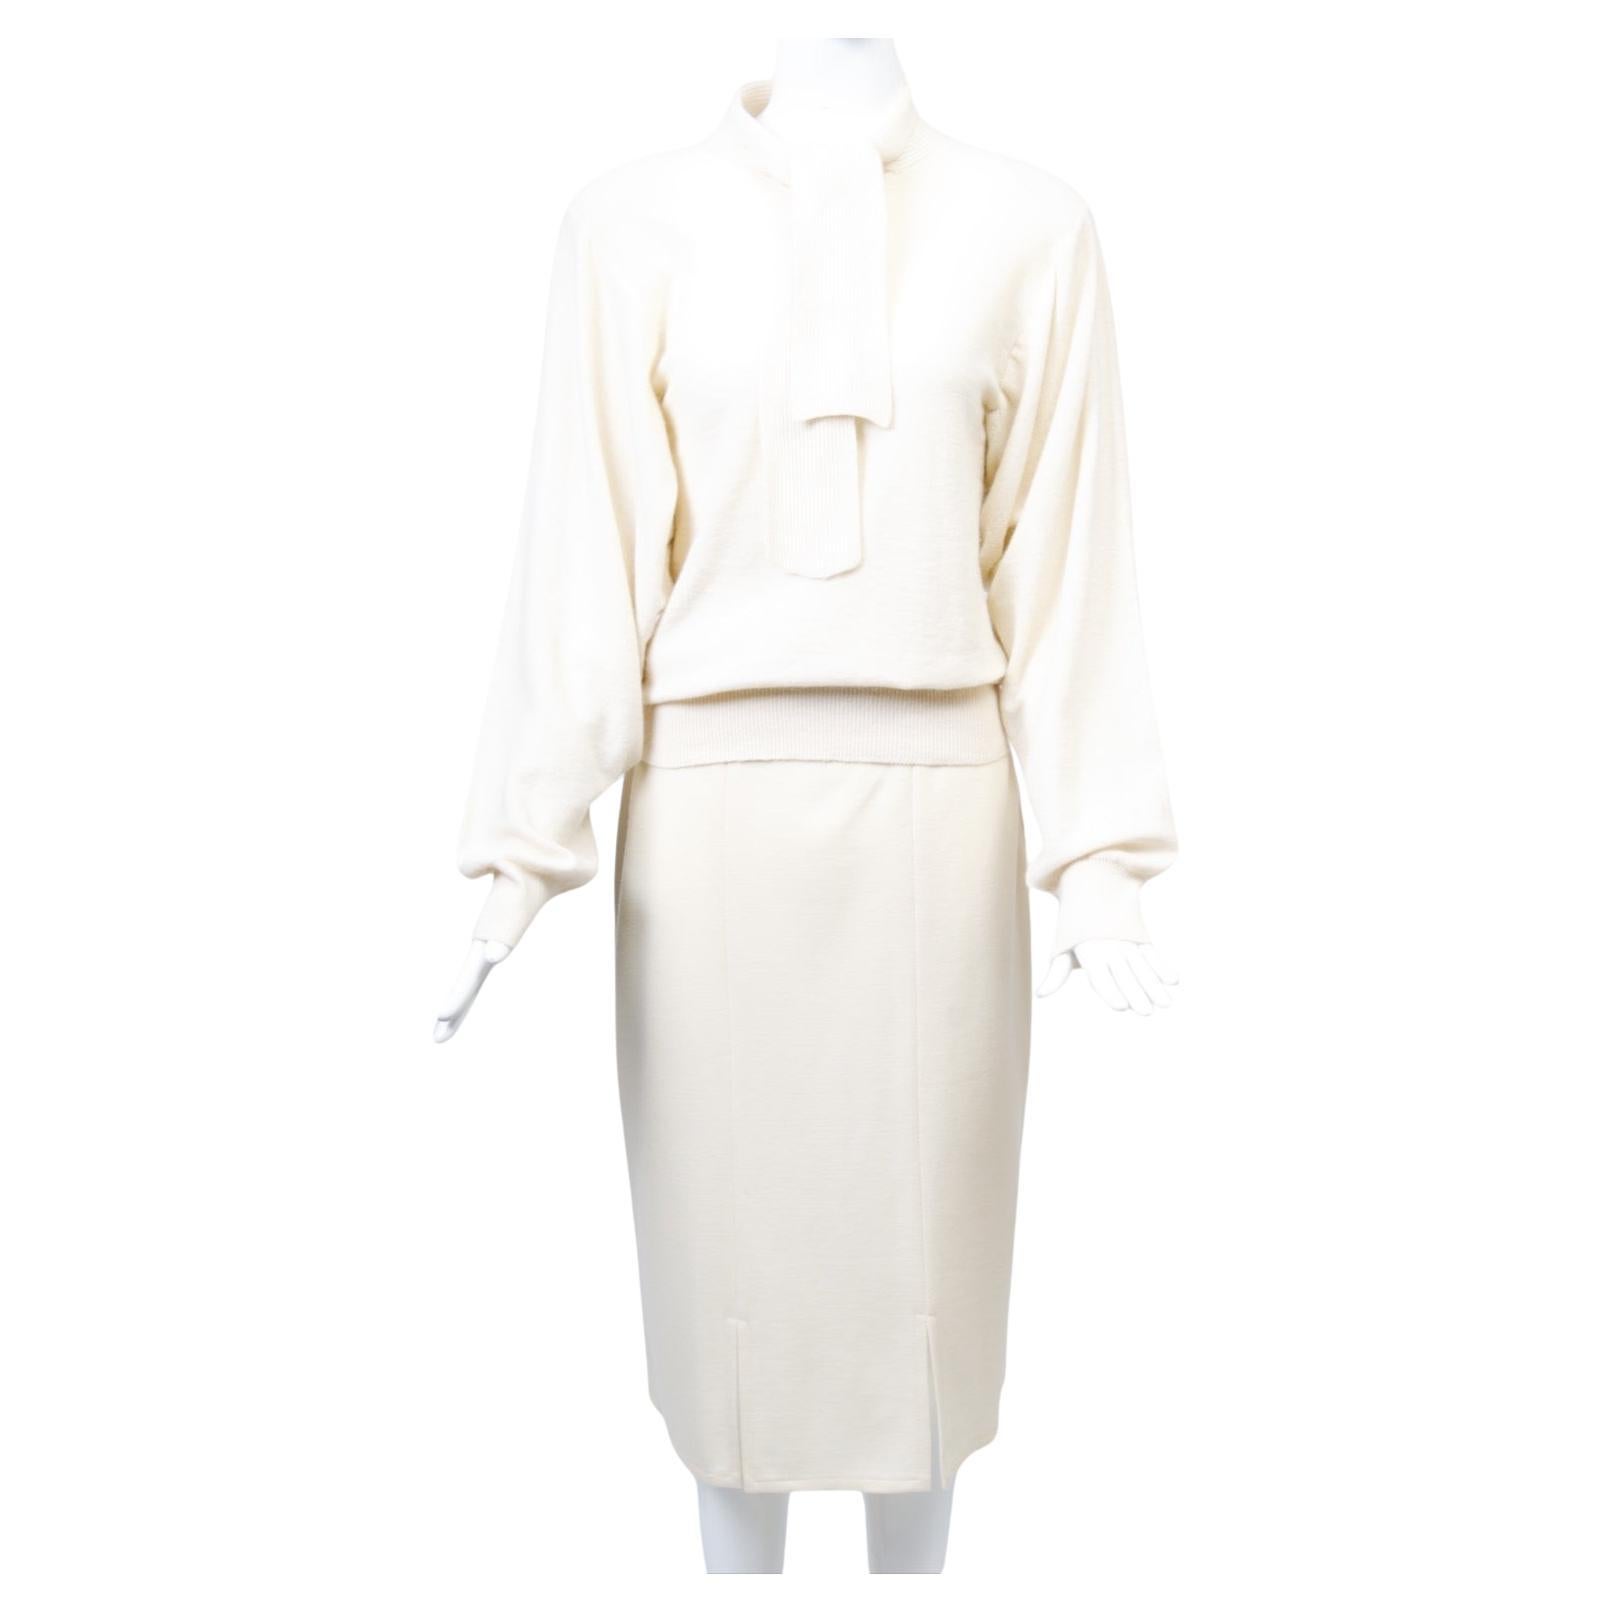 Ensemble de Sonia Rykiel composé d'un pull et d'une jupe étroite en tricot de laine ivoire, c.C.1980. Sur le dessus, le pull se distingue par une ouverture boutonnée sur le devant et une cravate en maille côtelée, tandis que le corps est réalisé en